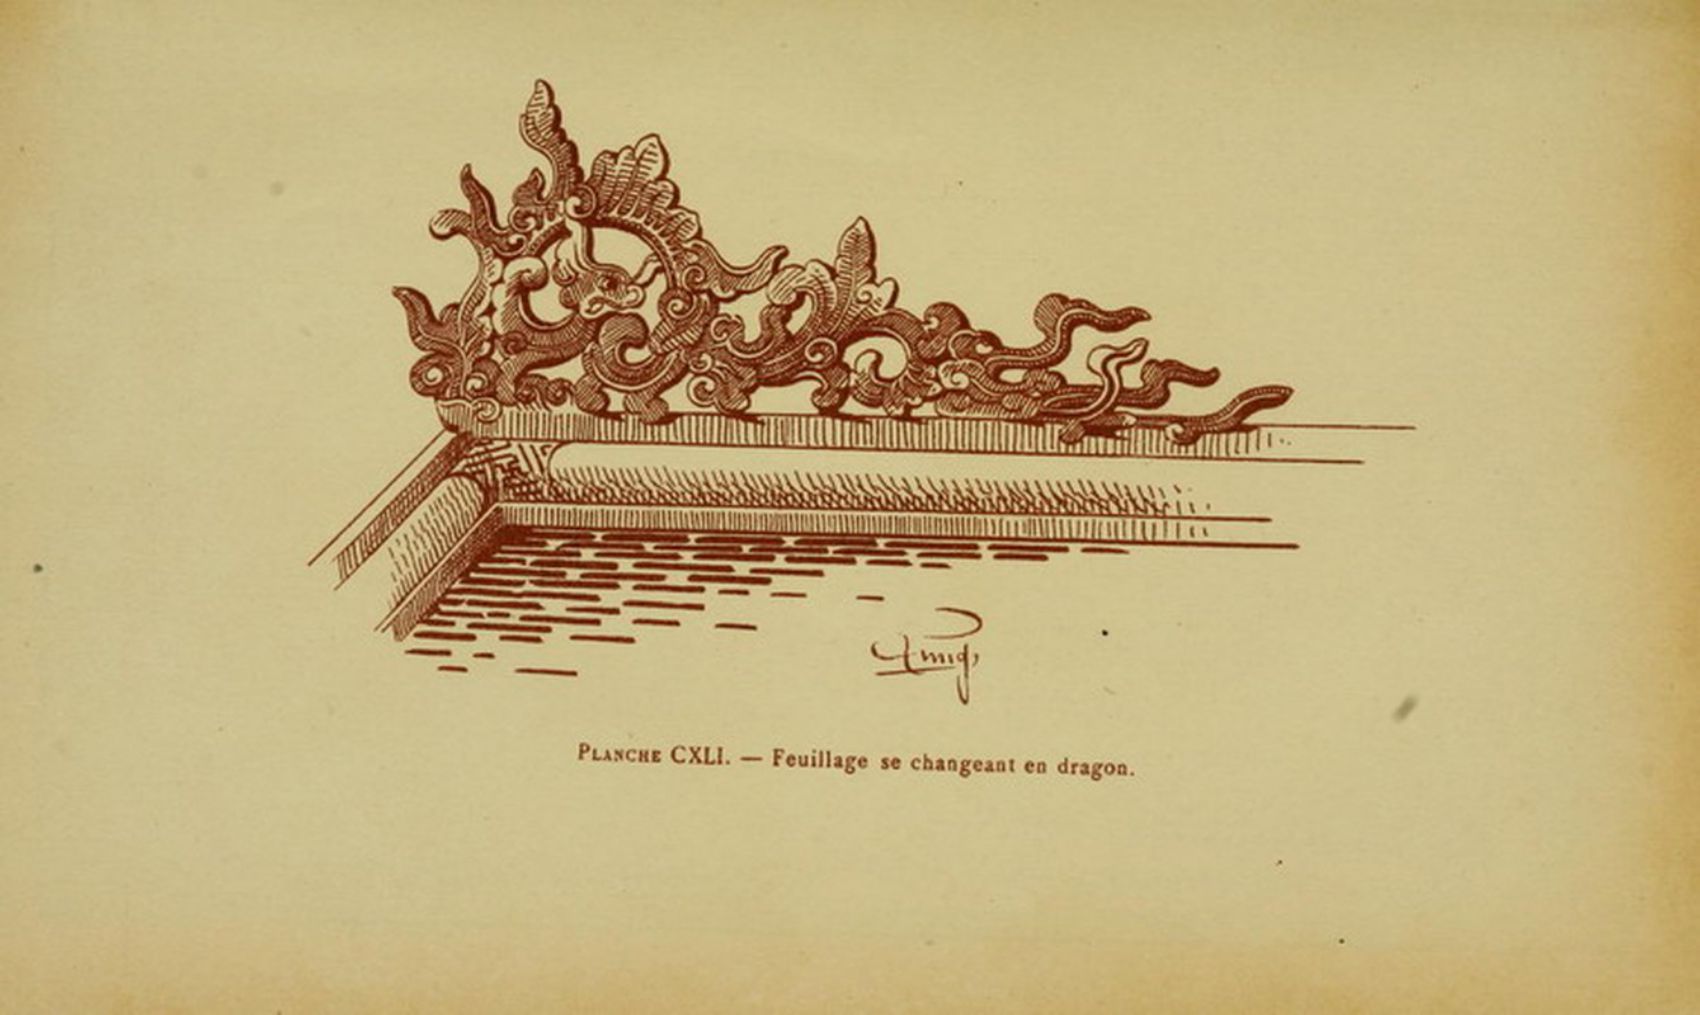 Rồng thời Nguyễn cách điệu - ký họa trong sách ảnh “Nghệ thuật Huế”  của Linh mục Léopold Cadière, xuất bản từ cách đây hơn 100 năm. Ảnh: Tư liệu